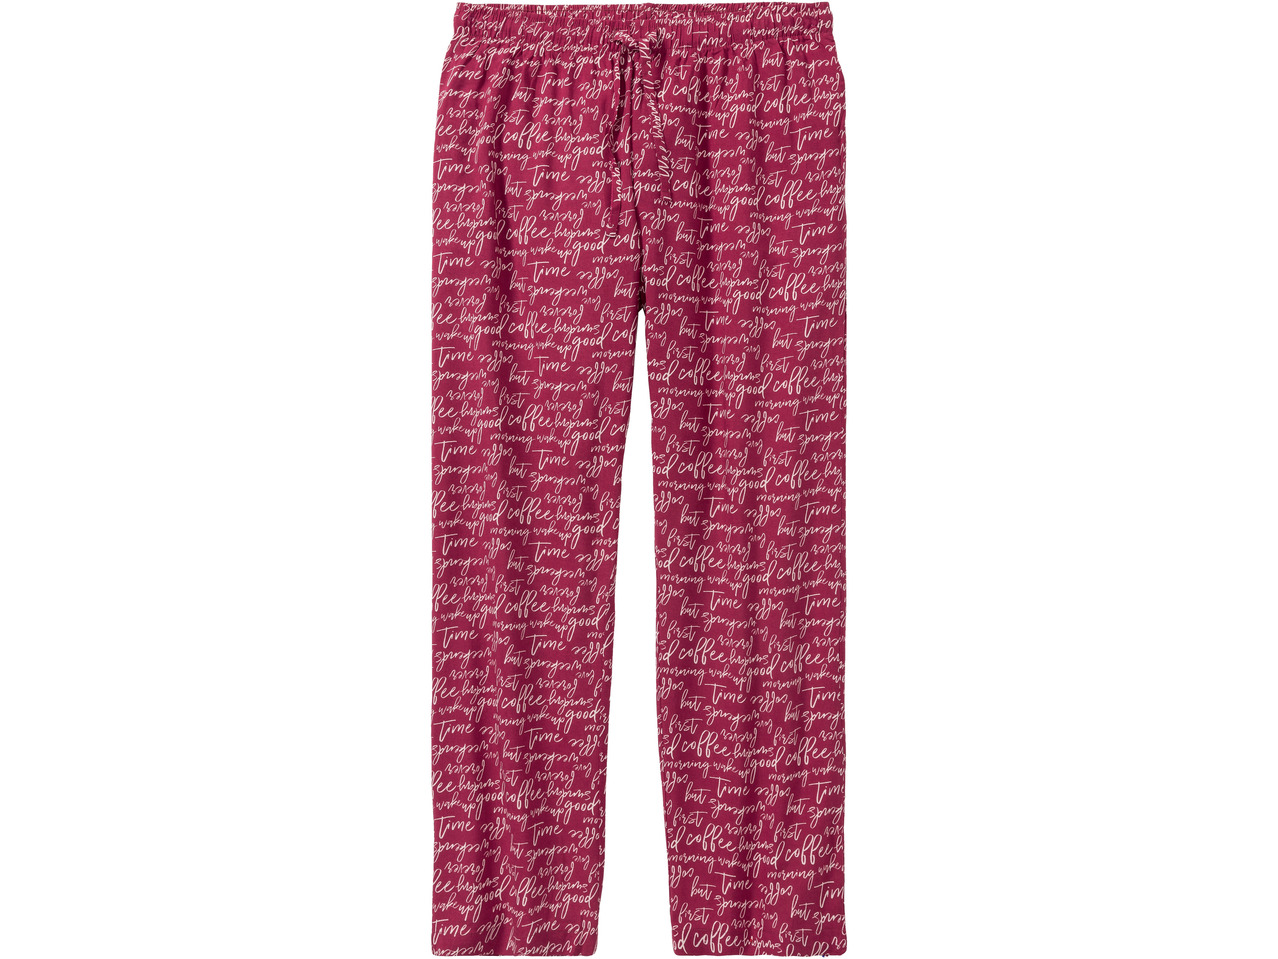 Ladies' Pyjamas